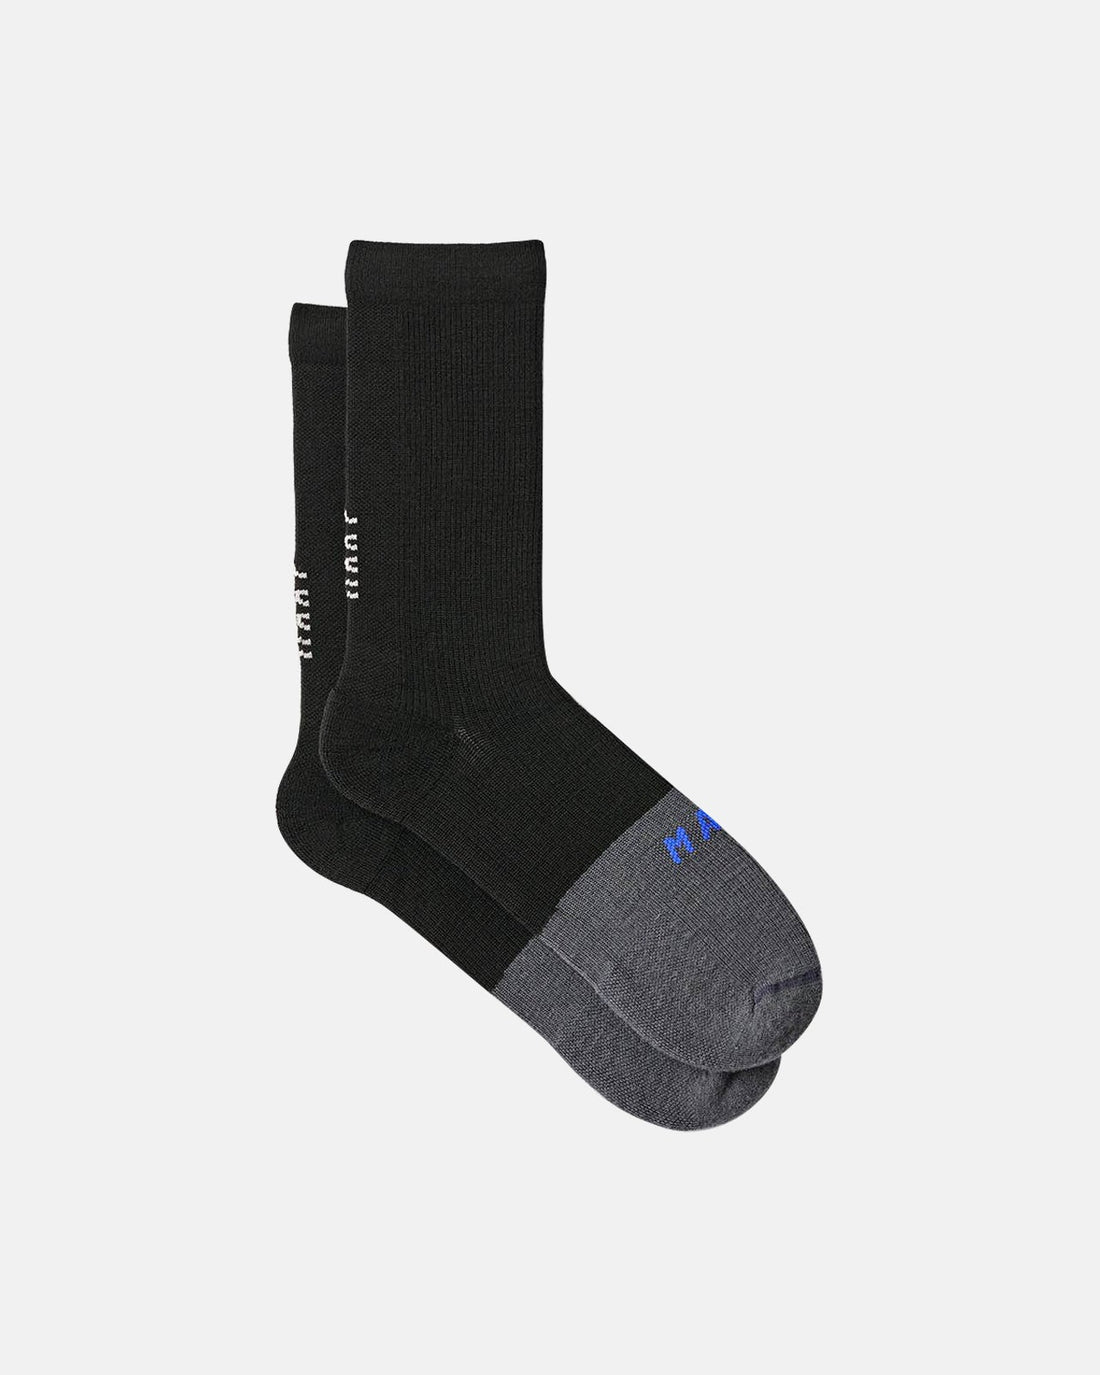 Division Sock Merino - Black - MAAP